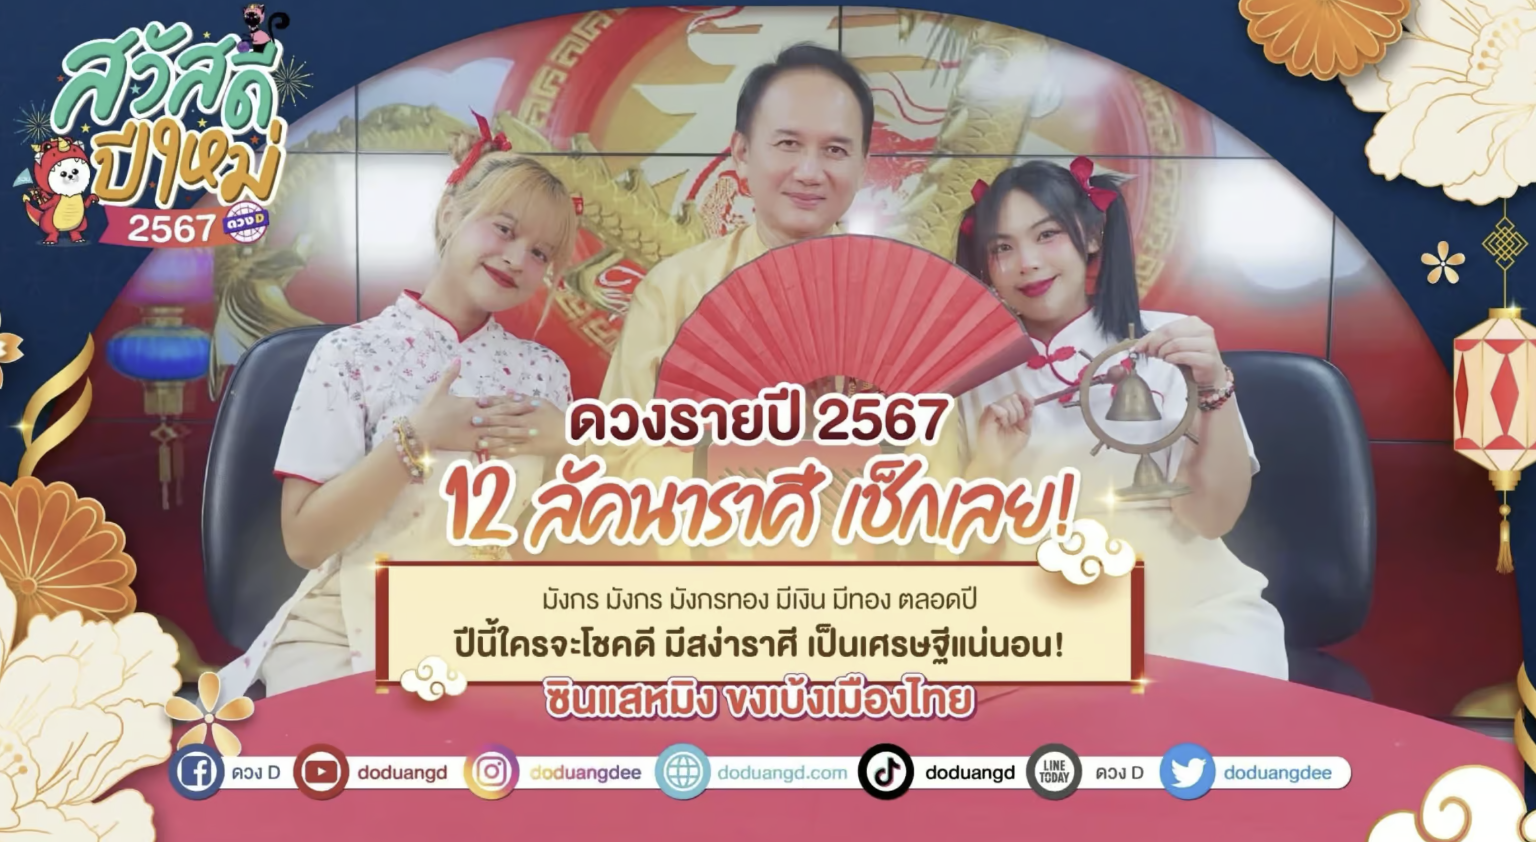 ละเอียดที่สุด! ดวง 12 ลัคนาราศี เดือนกันยายน 2566 ซินแสหมิง ขงเบ้งเมืองไทย